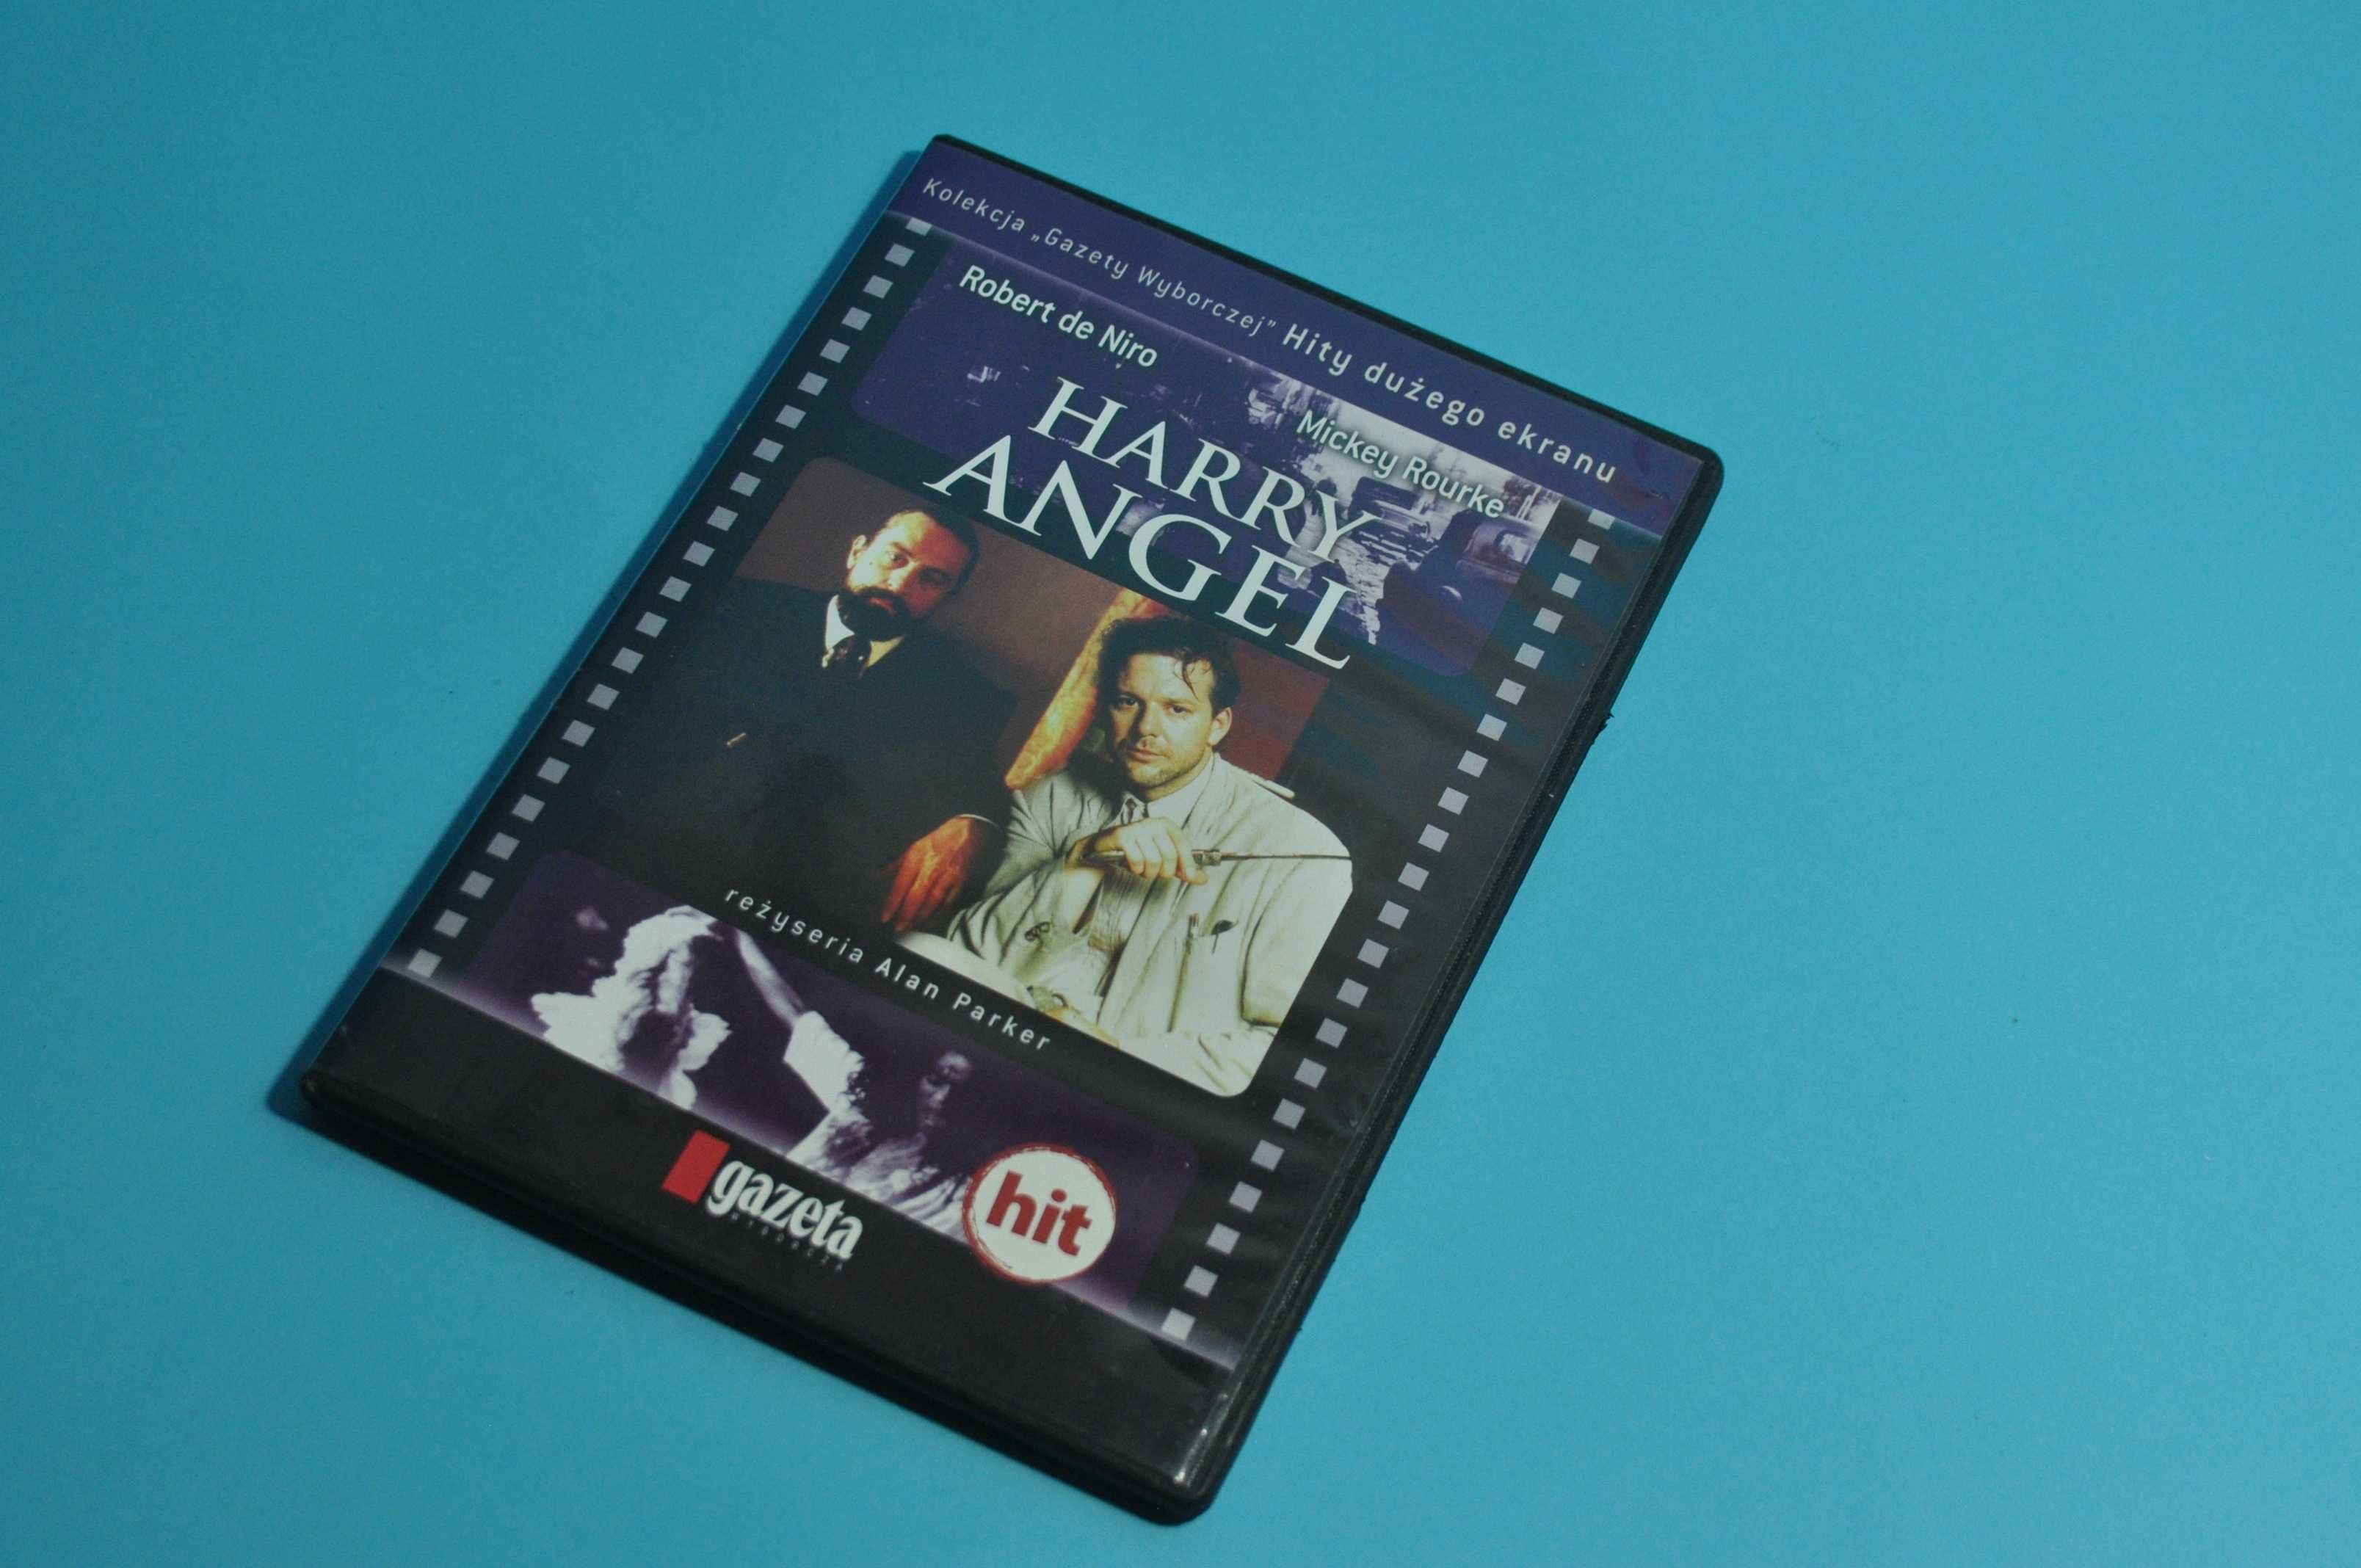 DVD Harry Angel Film z Mickey Rourke i Robert de Niro